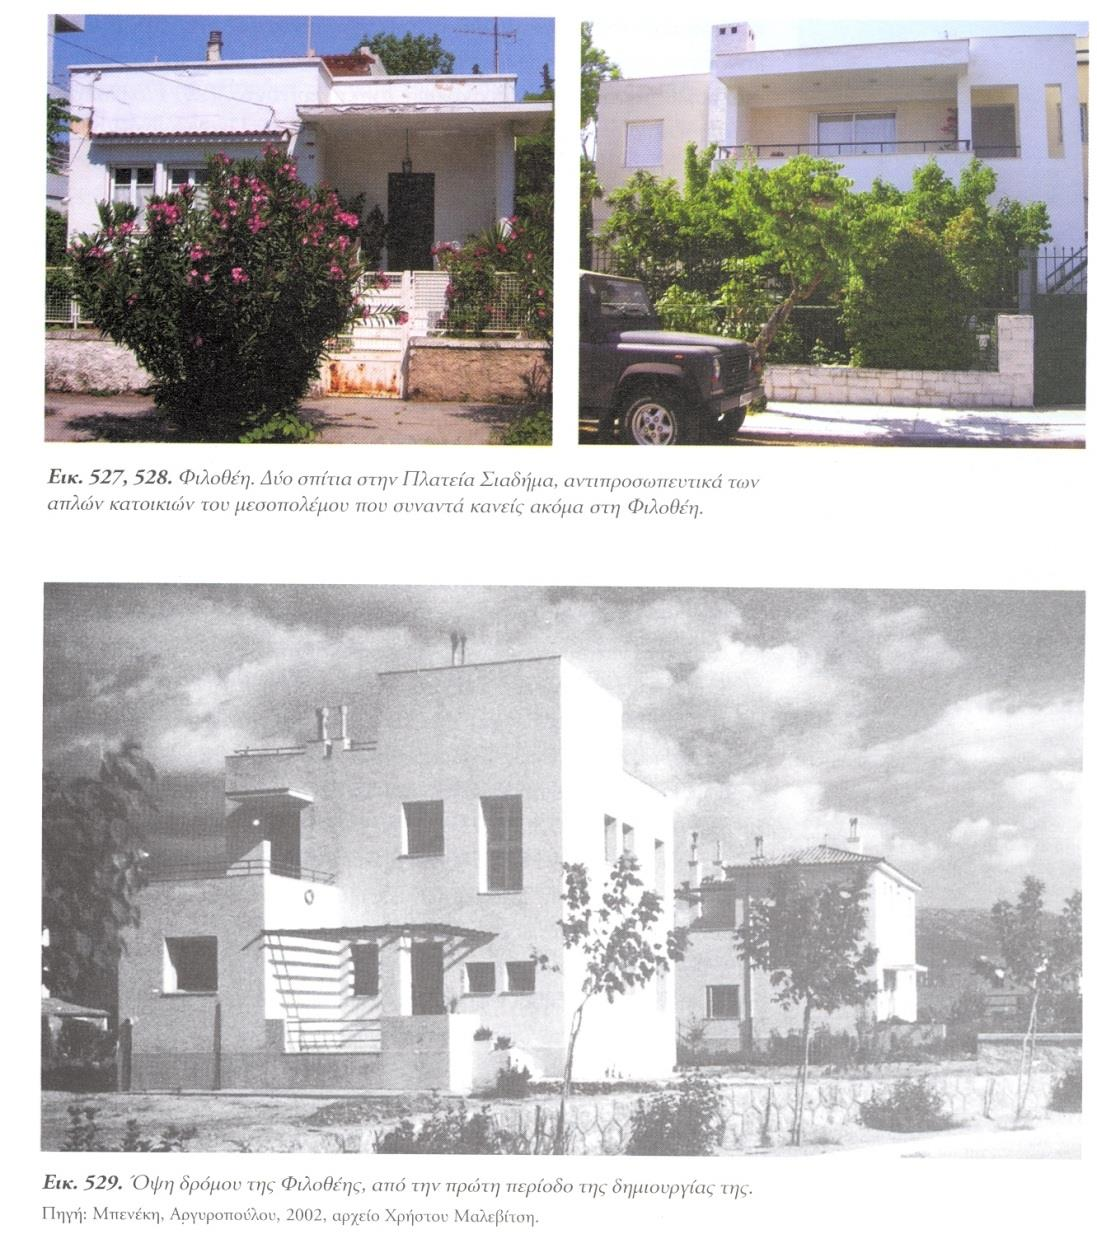 Παραδείγματα σχεδιασμού στην Ελλάδα ως τη δεκαετία